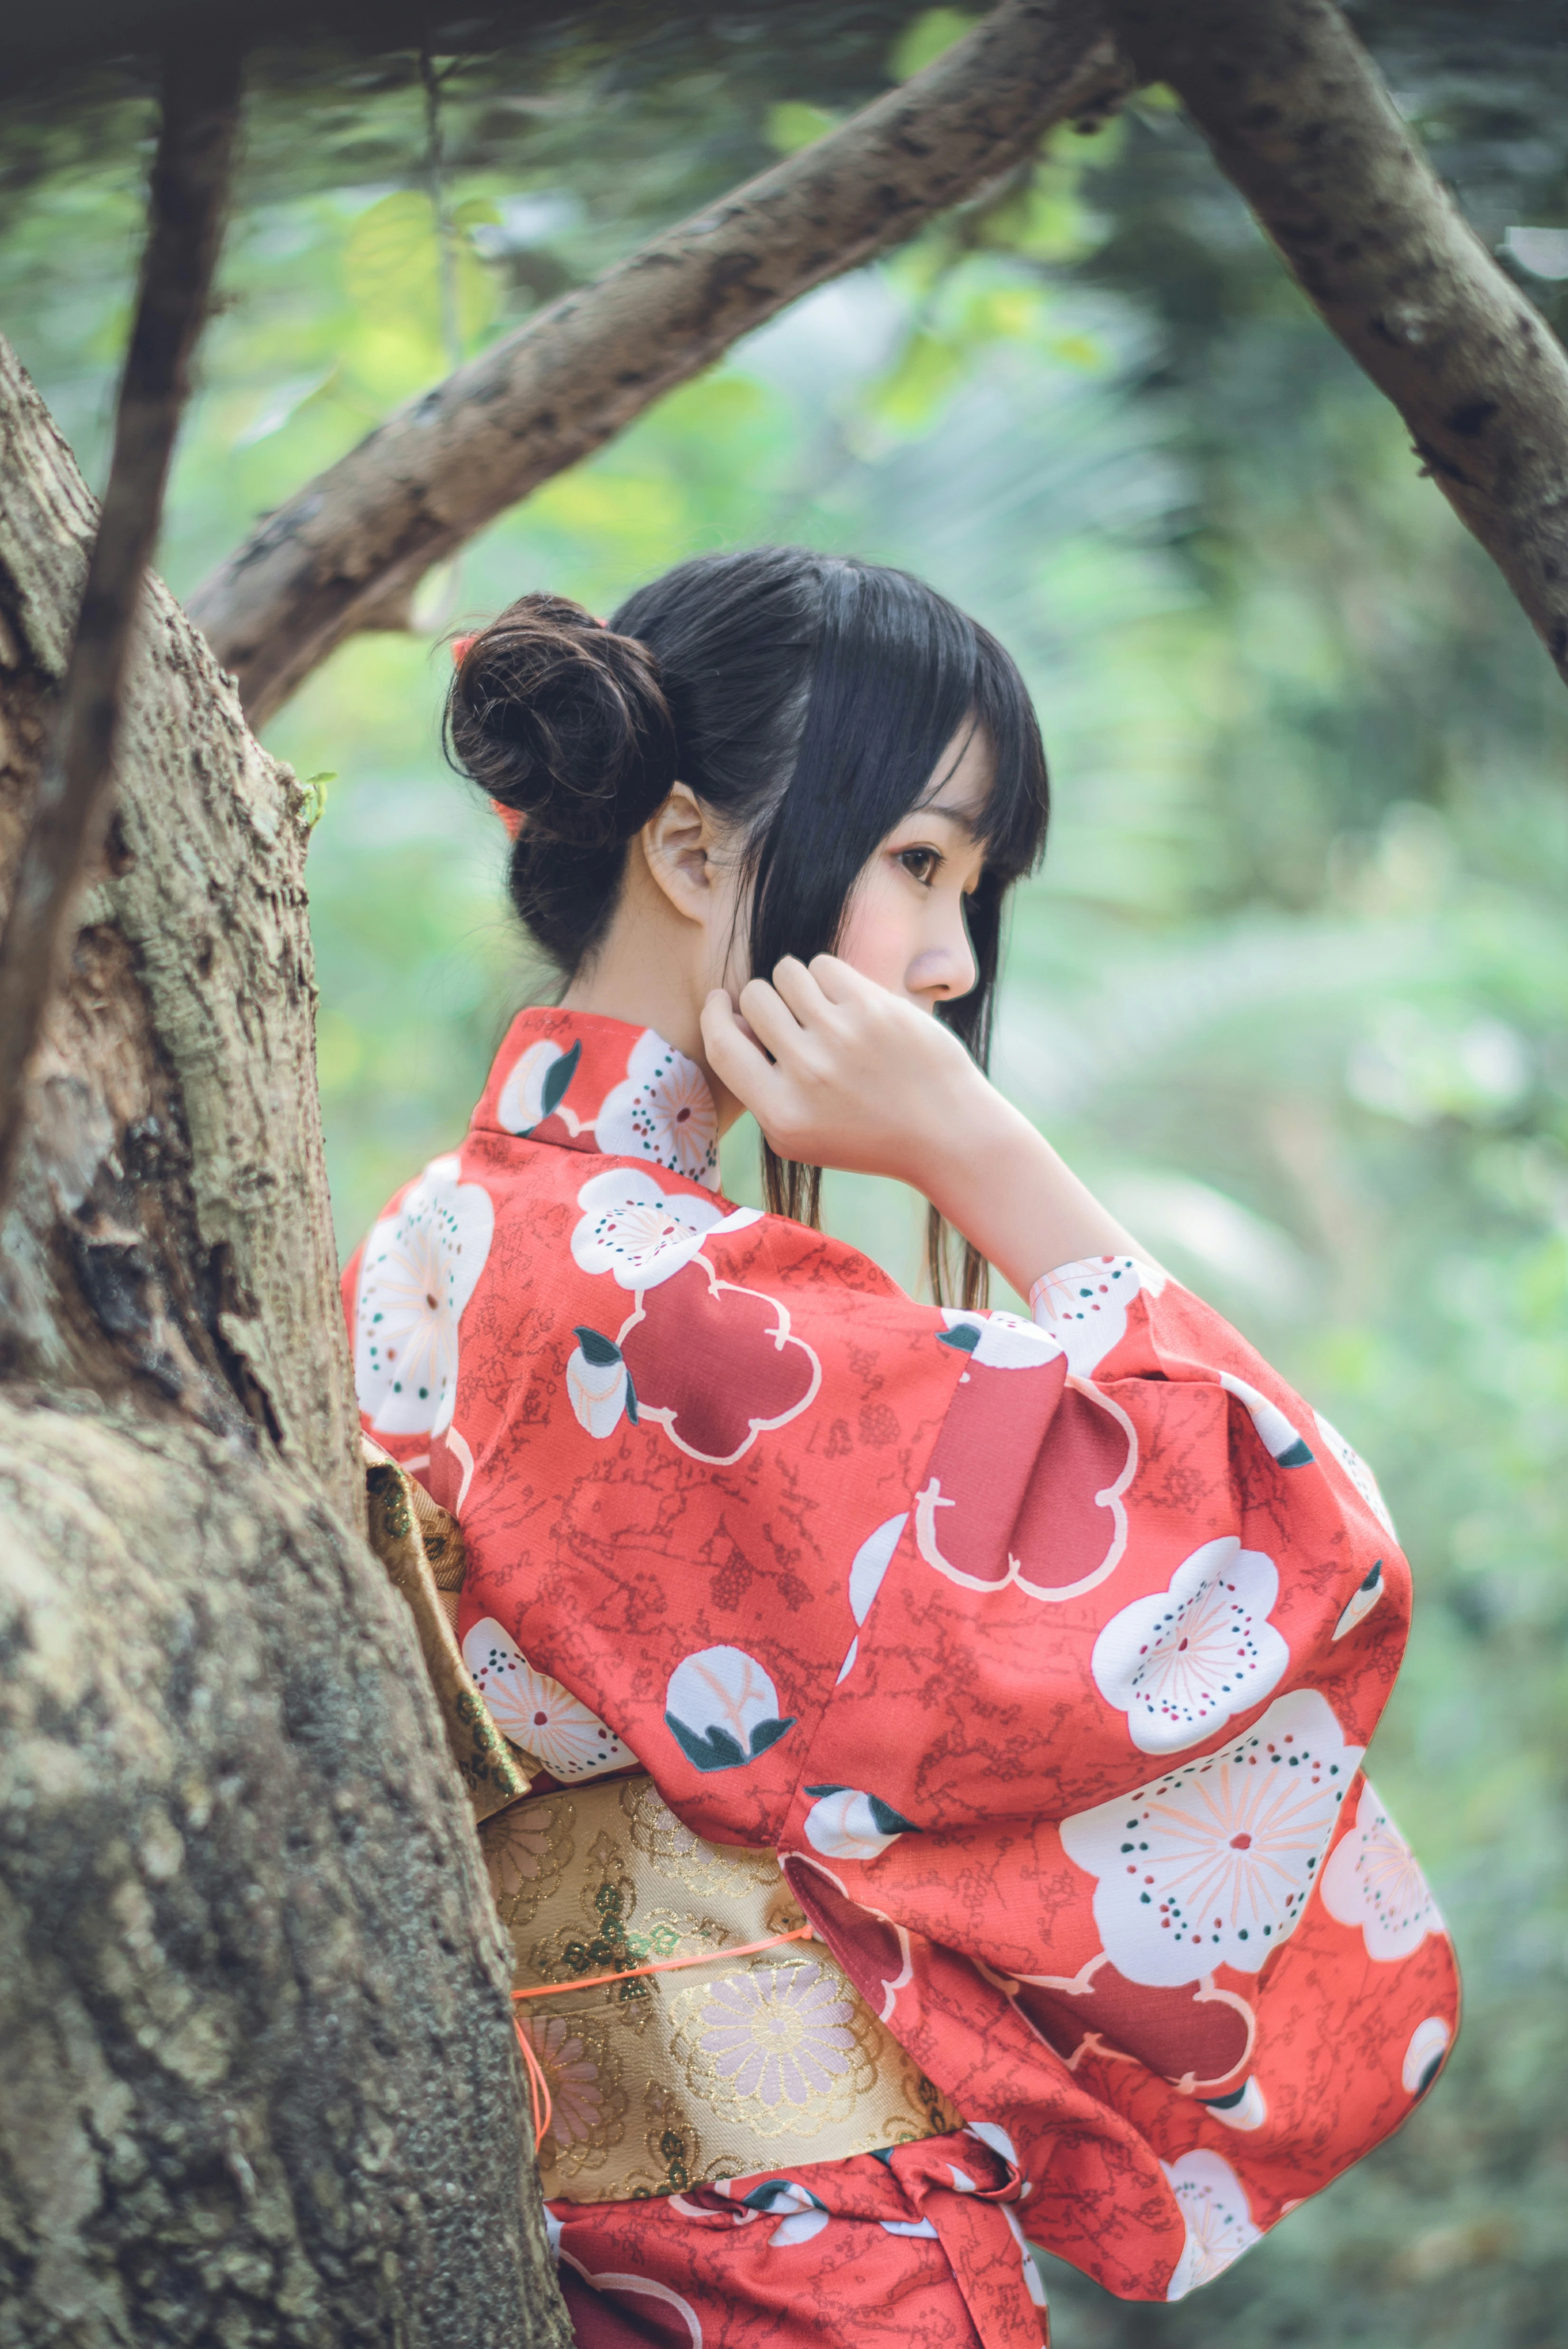 清纯少女小萝莉 桜桃喵 红色和服山间密林写真集,0013